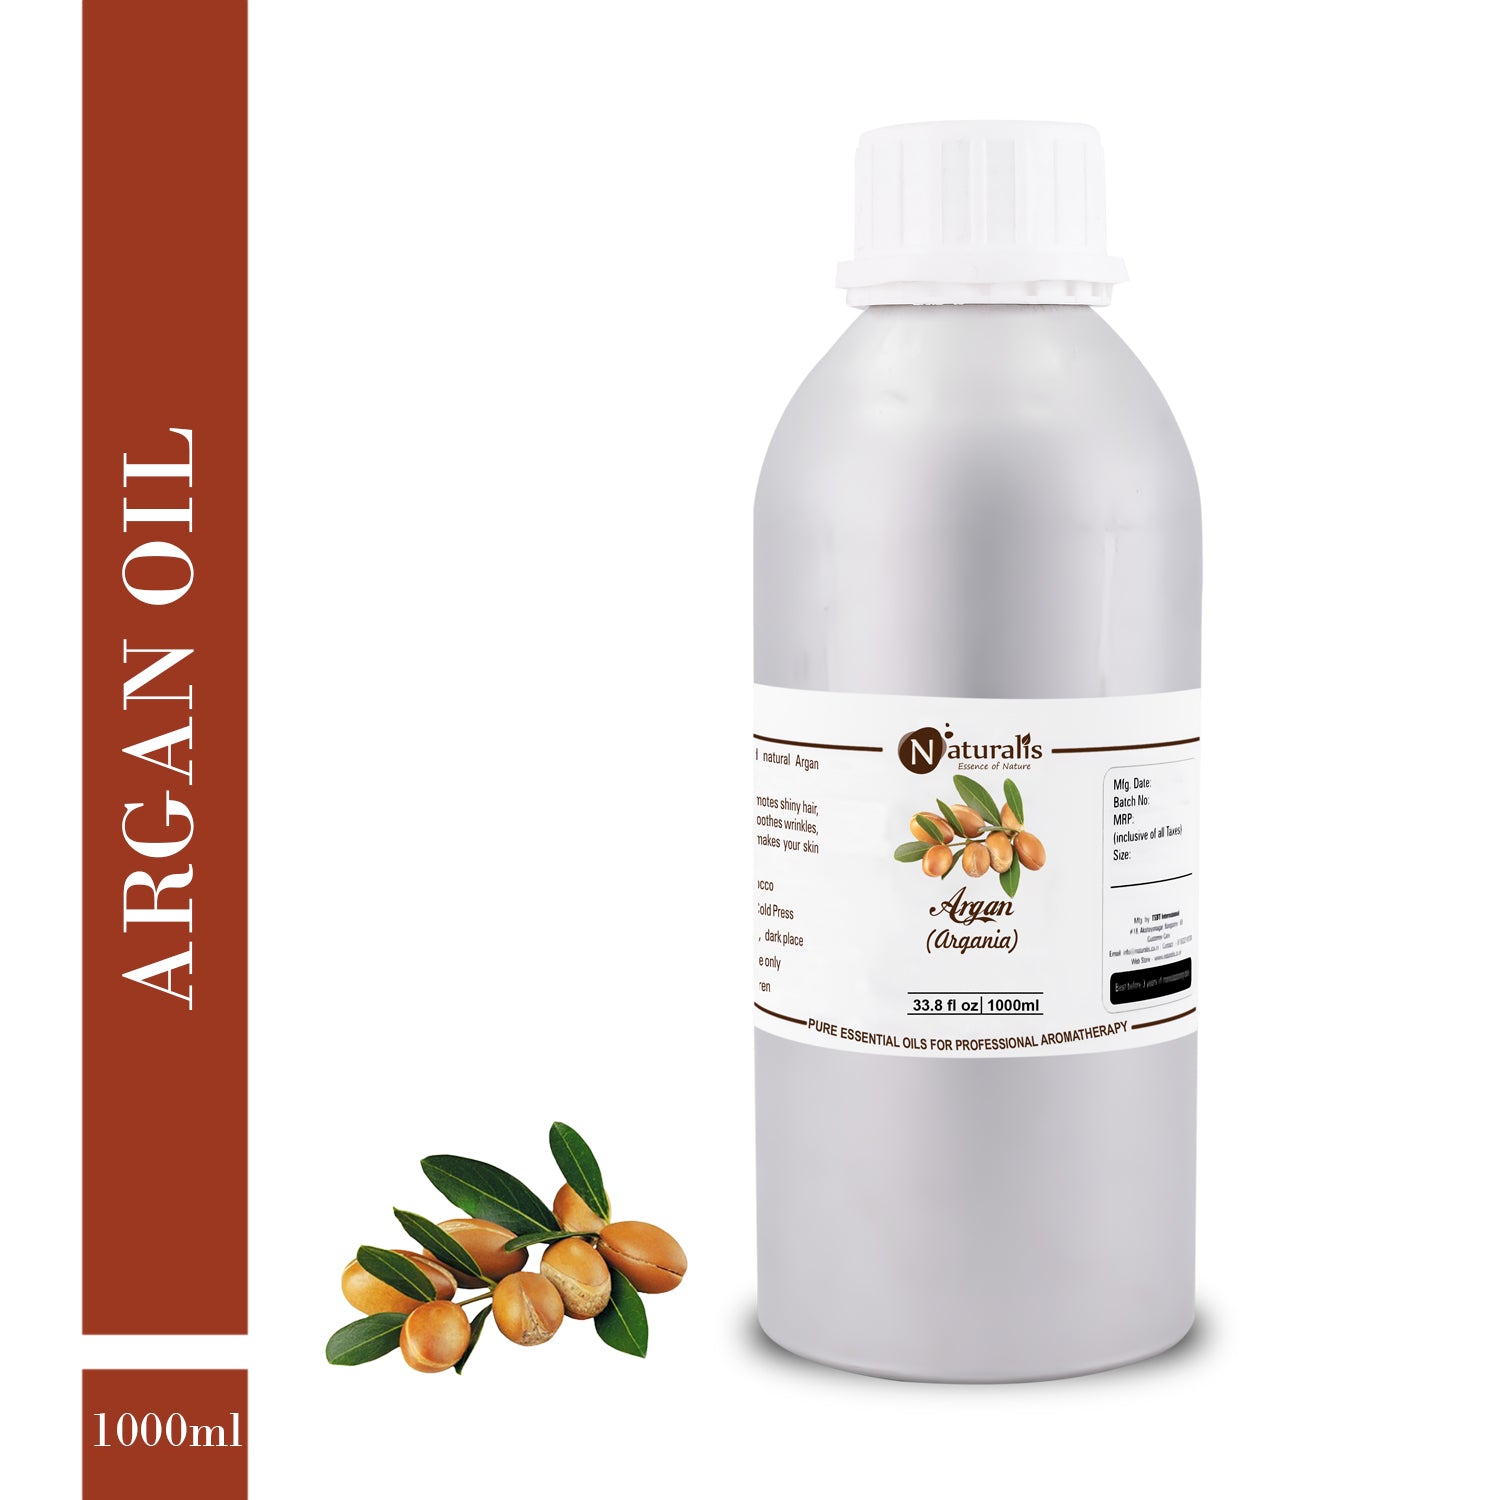 Argan Carrier Oil by Naturalis - Pure Natural - Naturalis